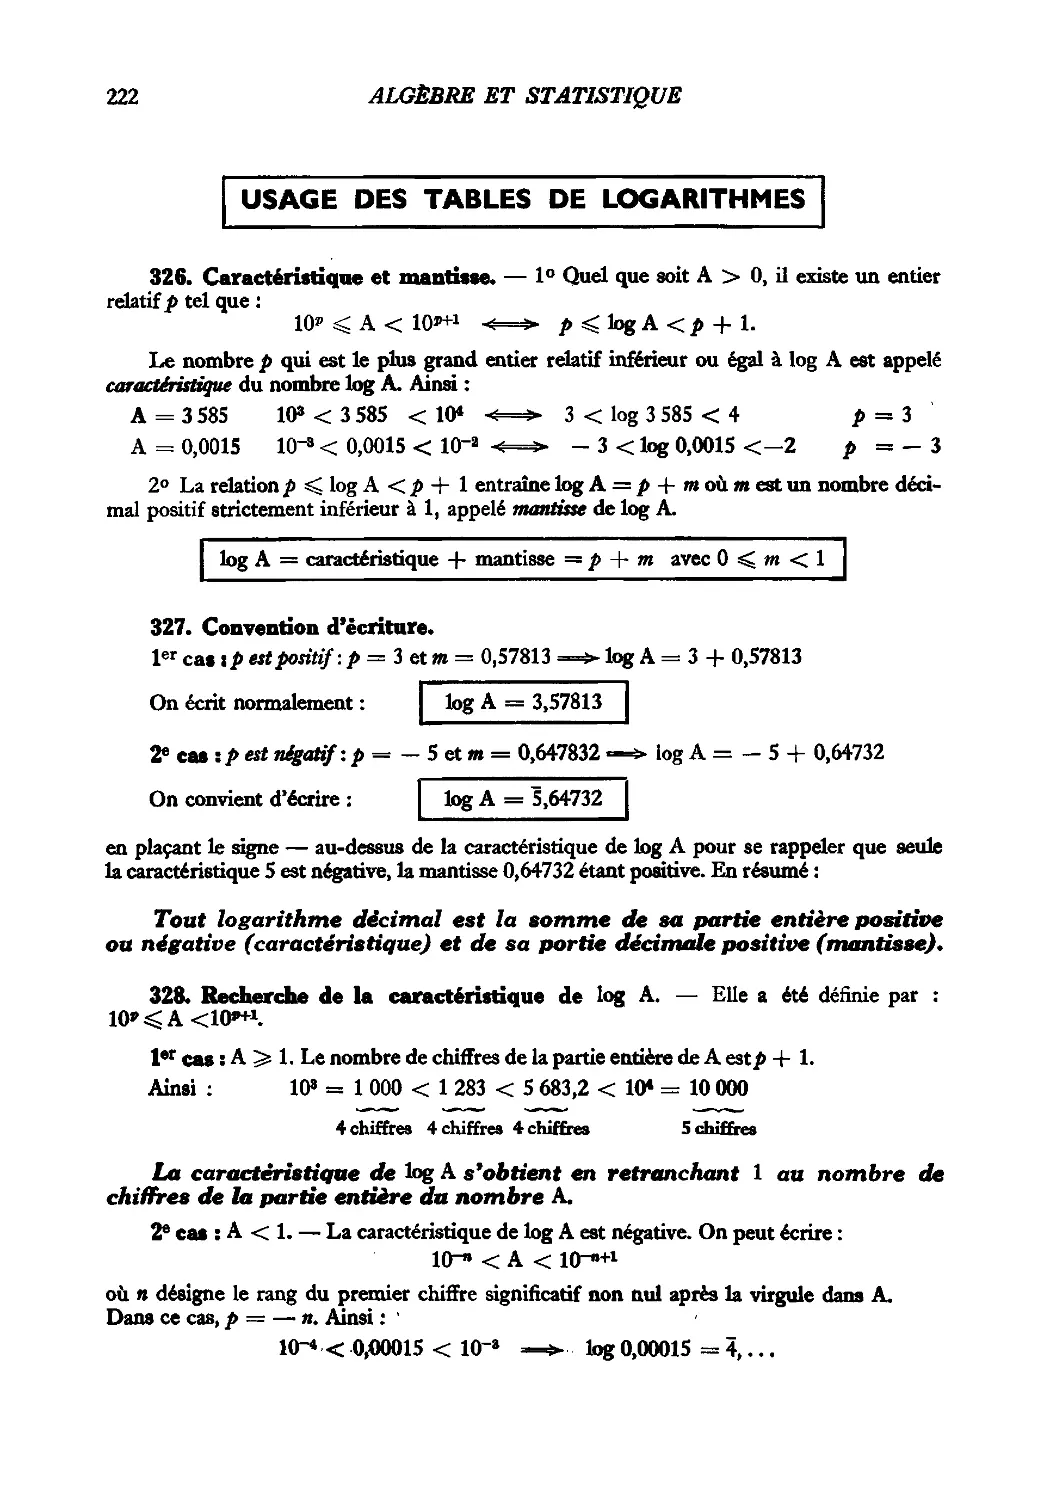 Usage des tables de logarithmes
327. Convention d’écriture
328. Recherche de la caractéristique de log A